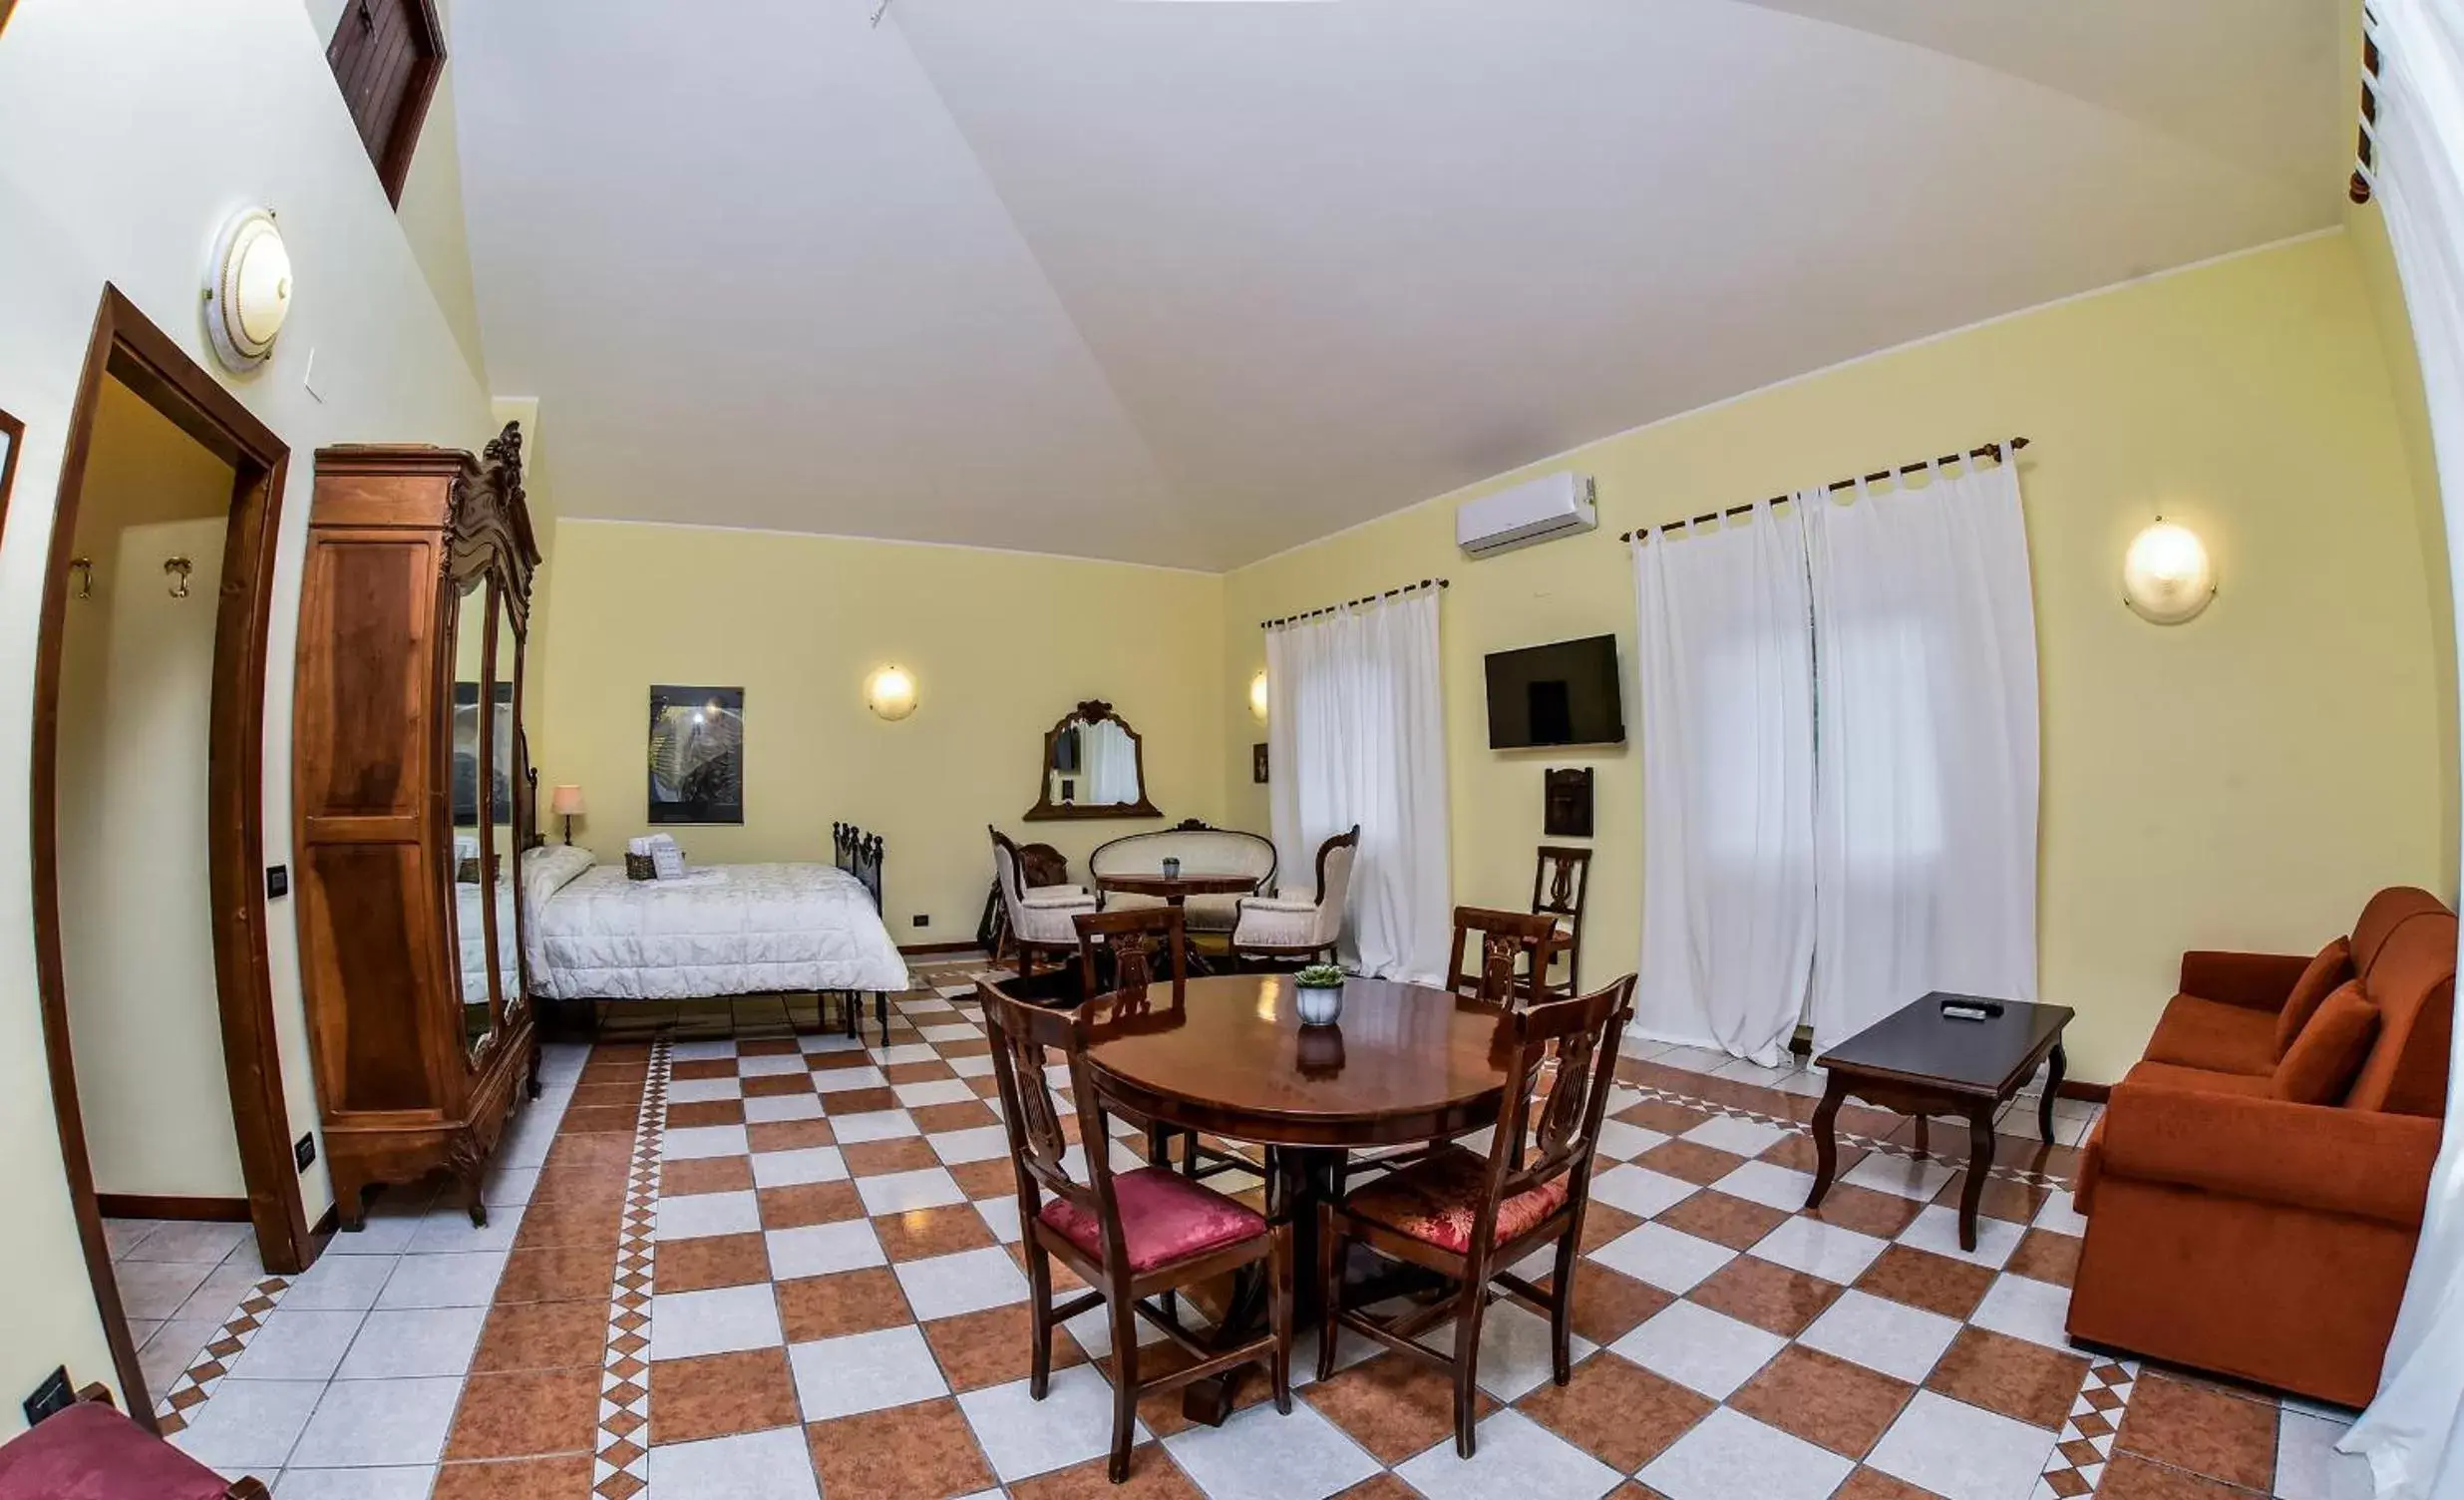 Photo of the whole room, Dining Area in B&B Villa Bentivoglio